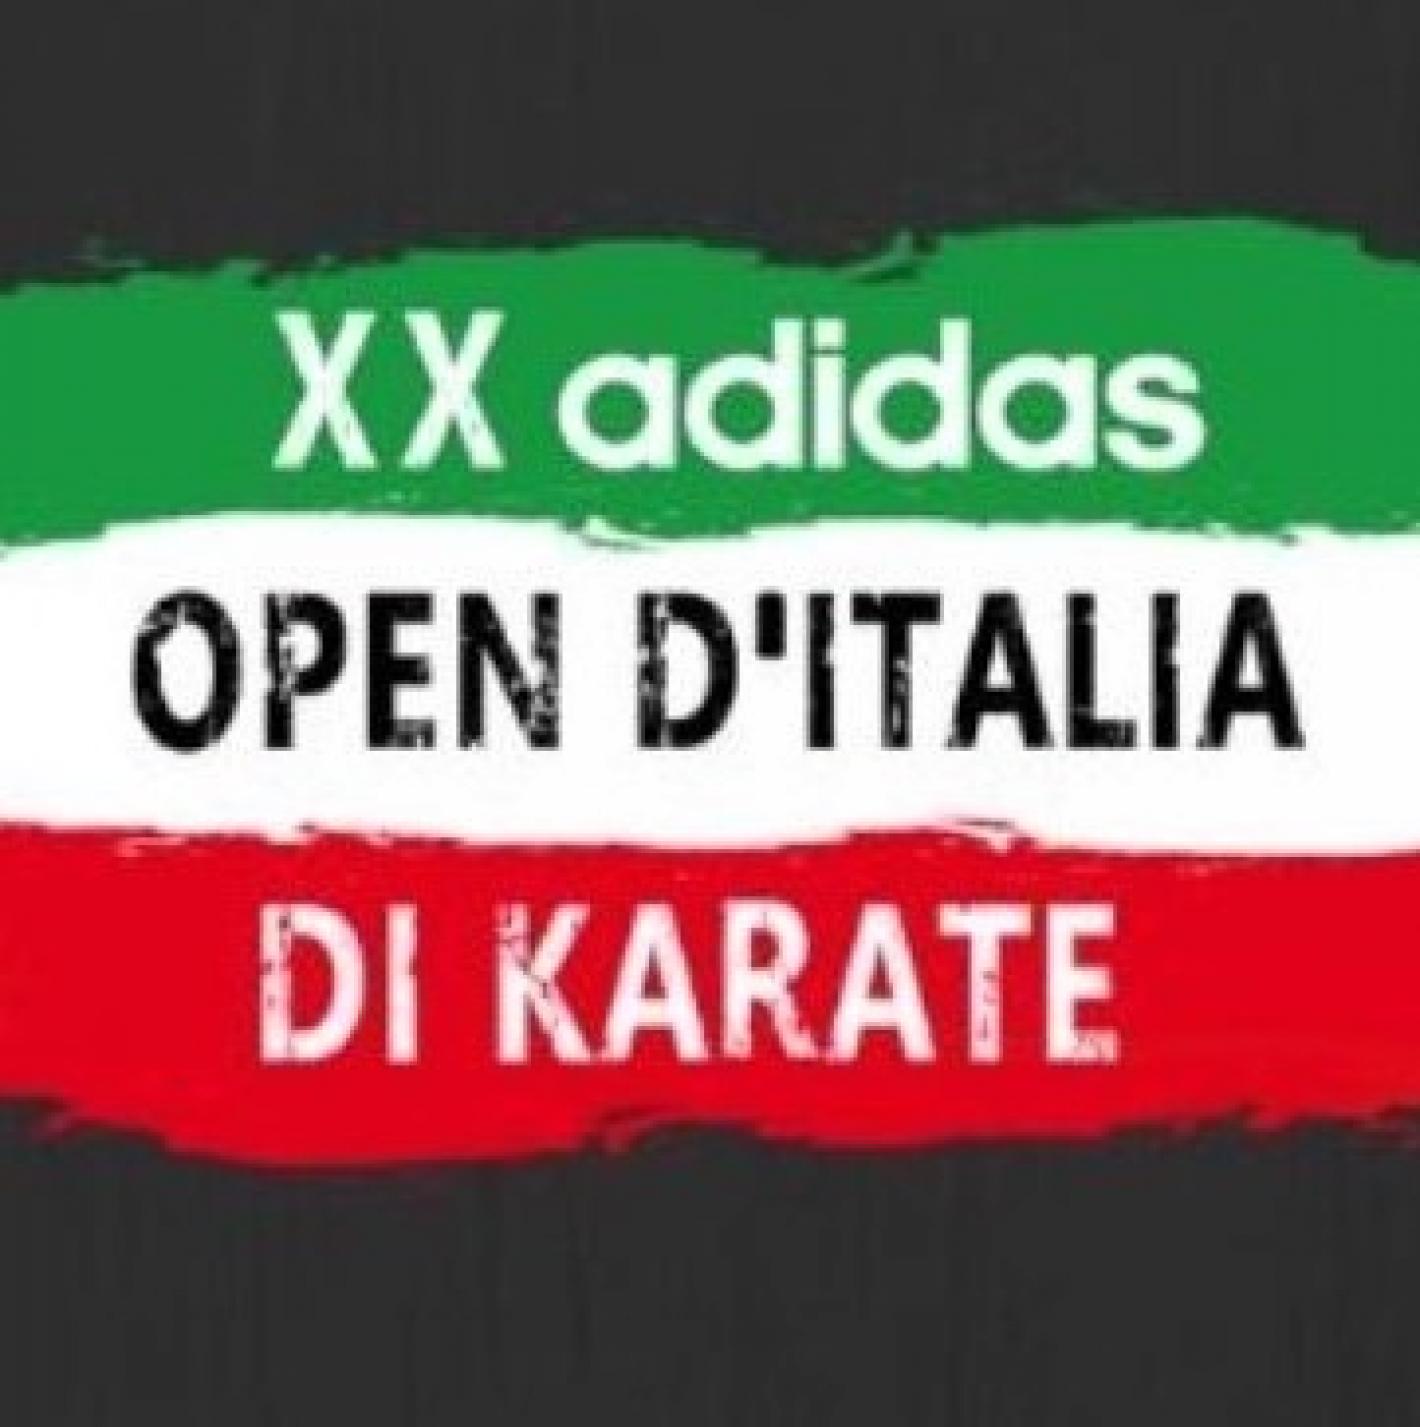 20 adidas open italia karate